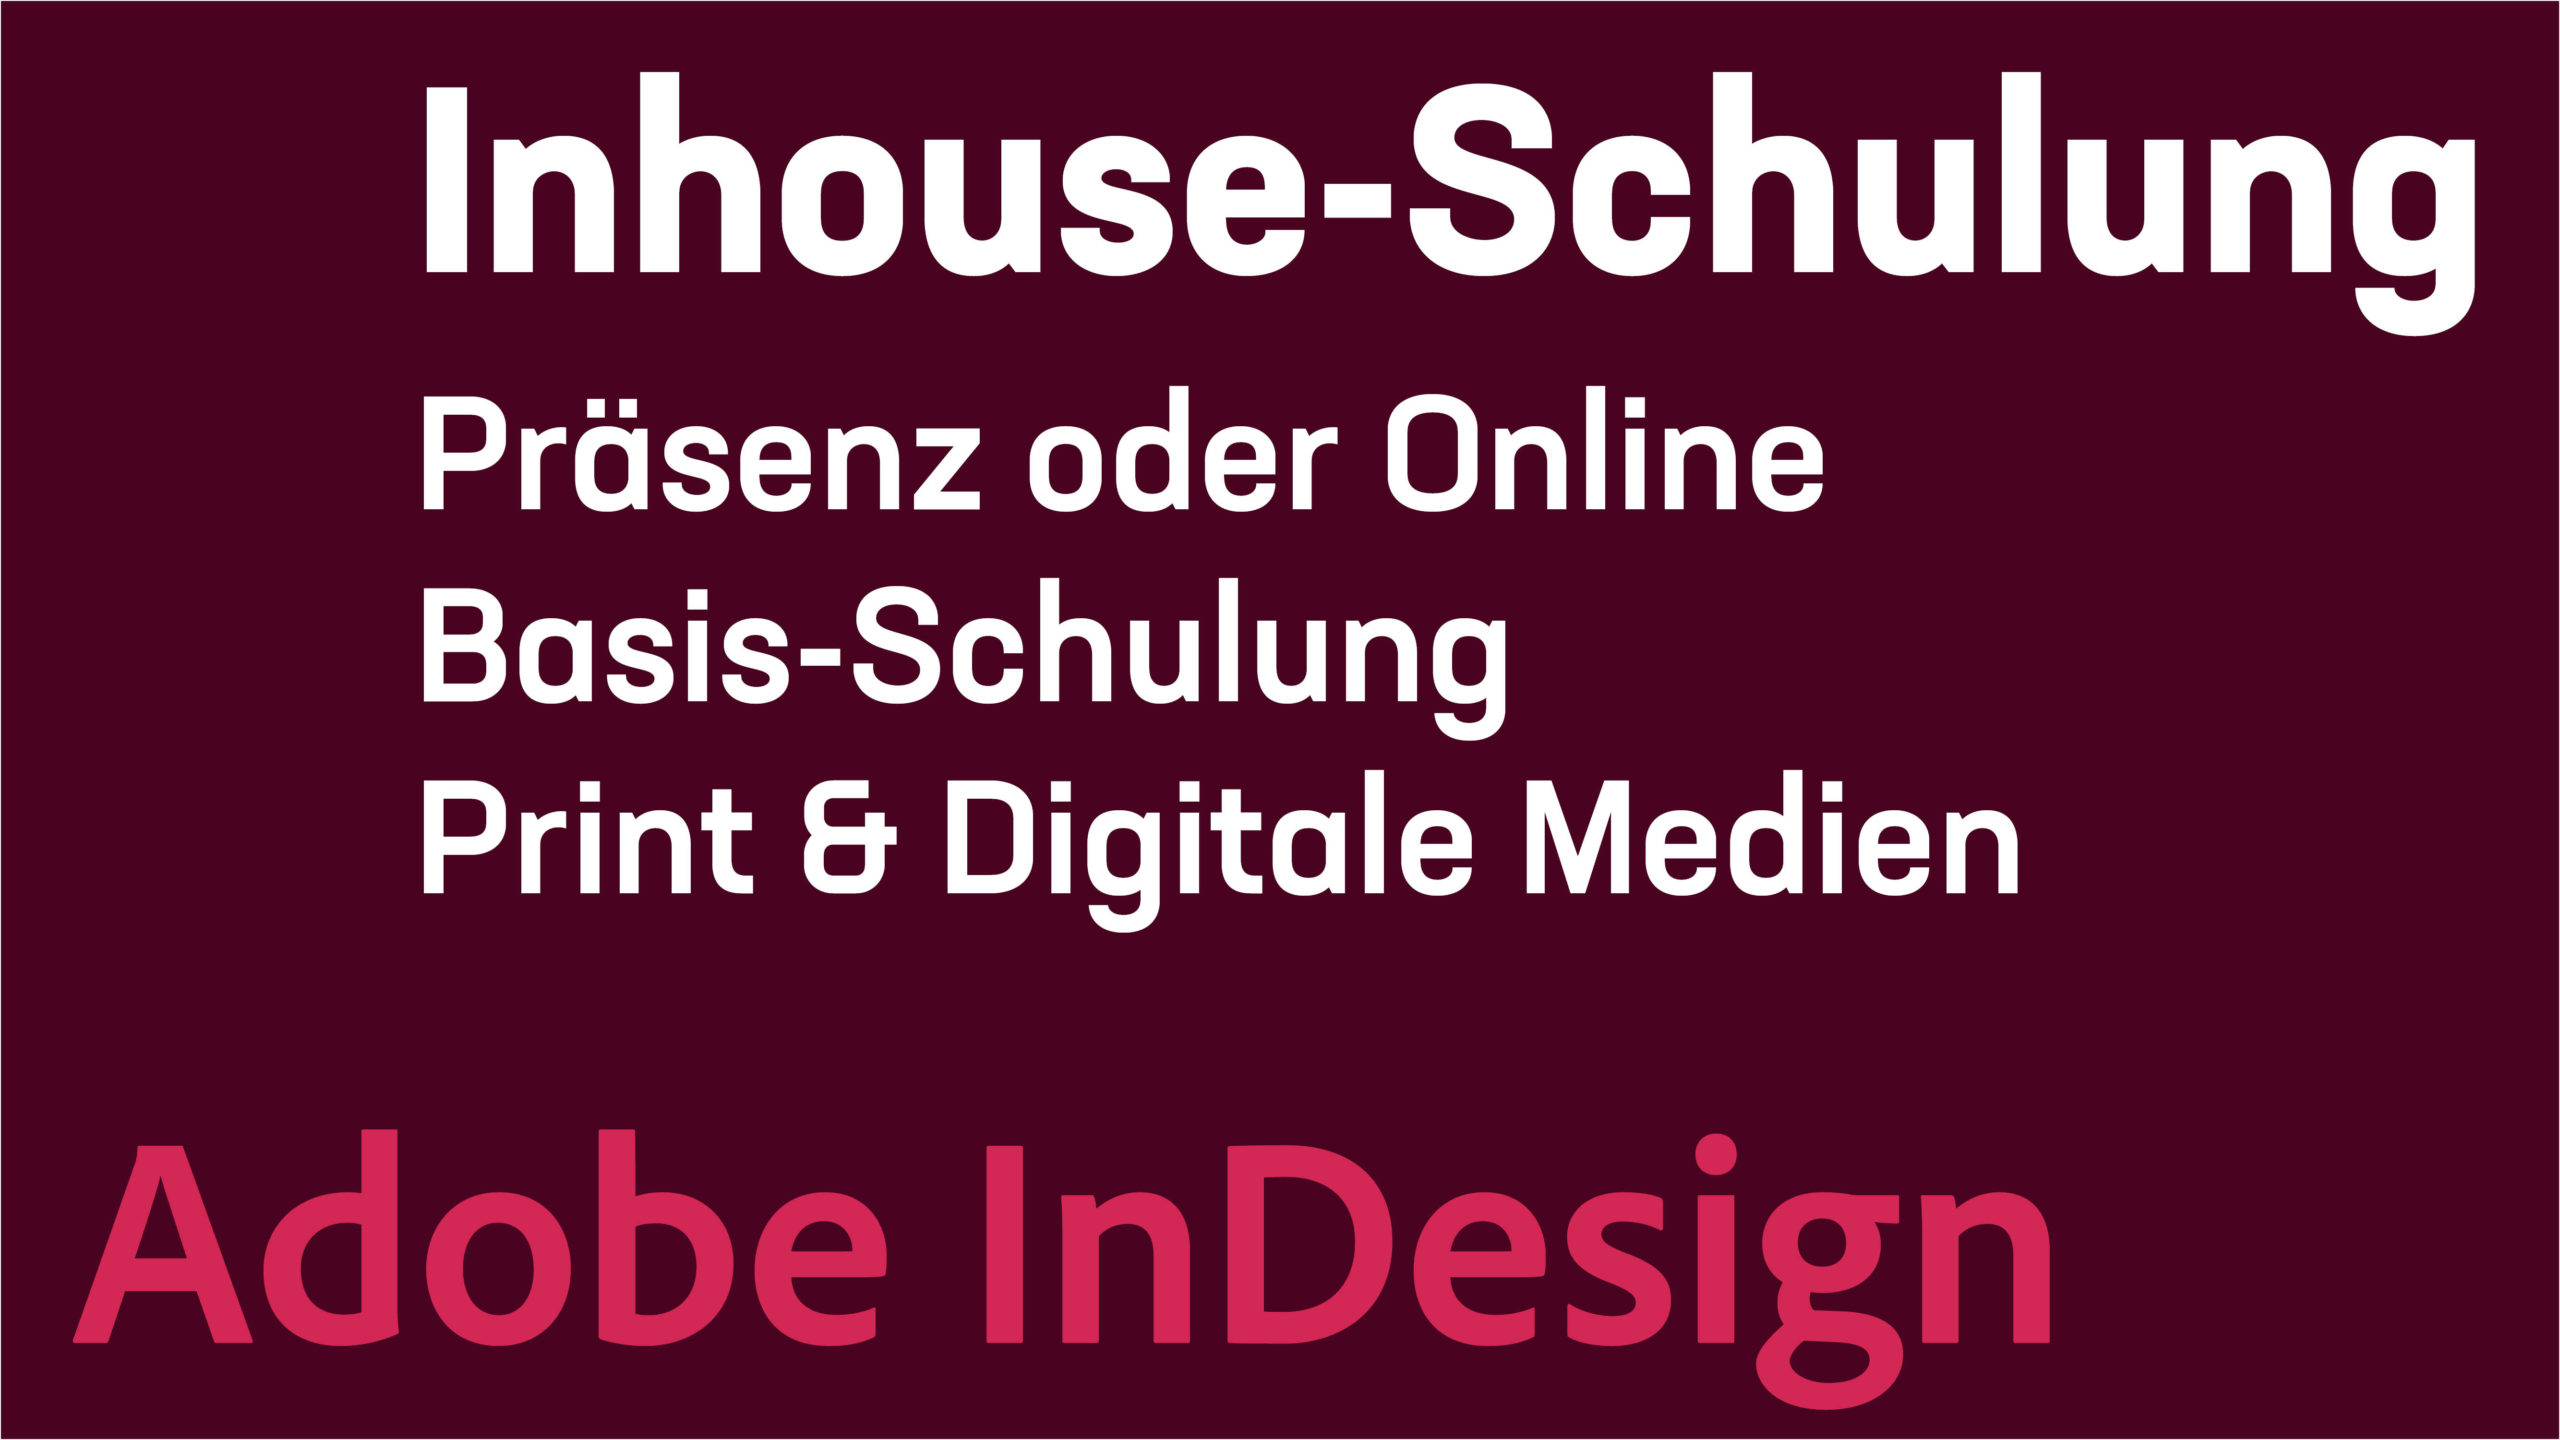 Inhouse-Schulung - Adobe InDesign - Print & digitale Medien gestalten - Grundkurs